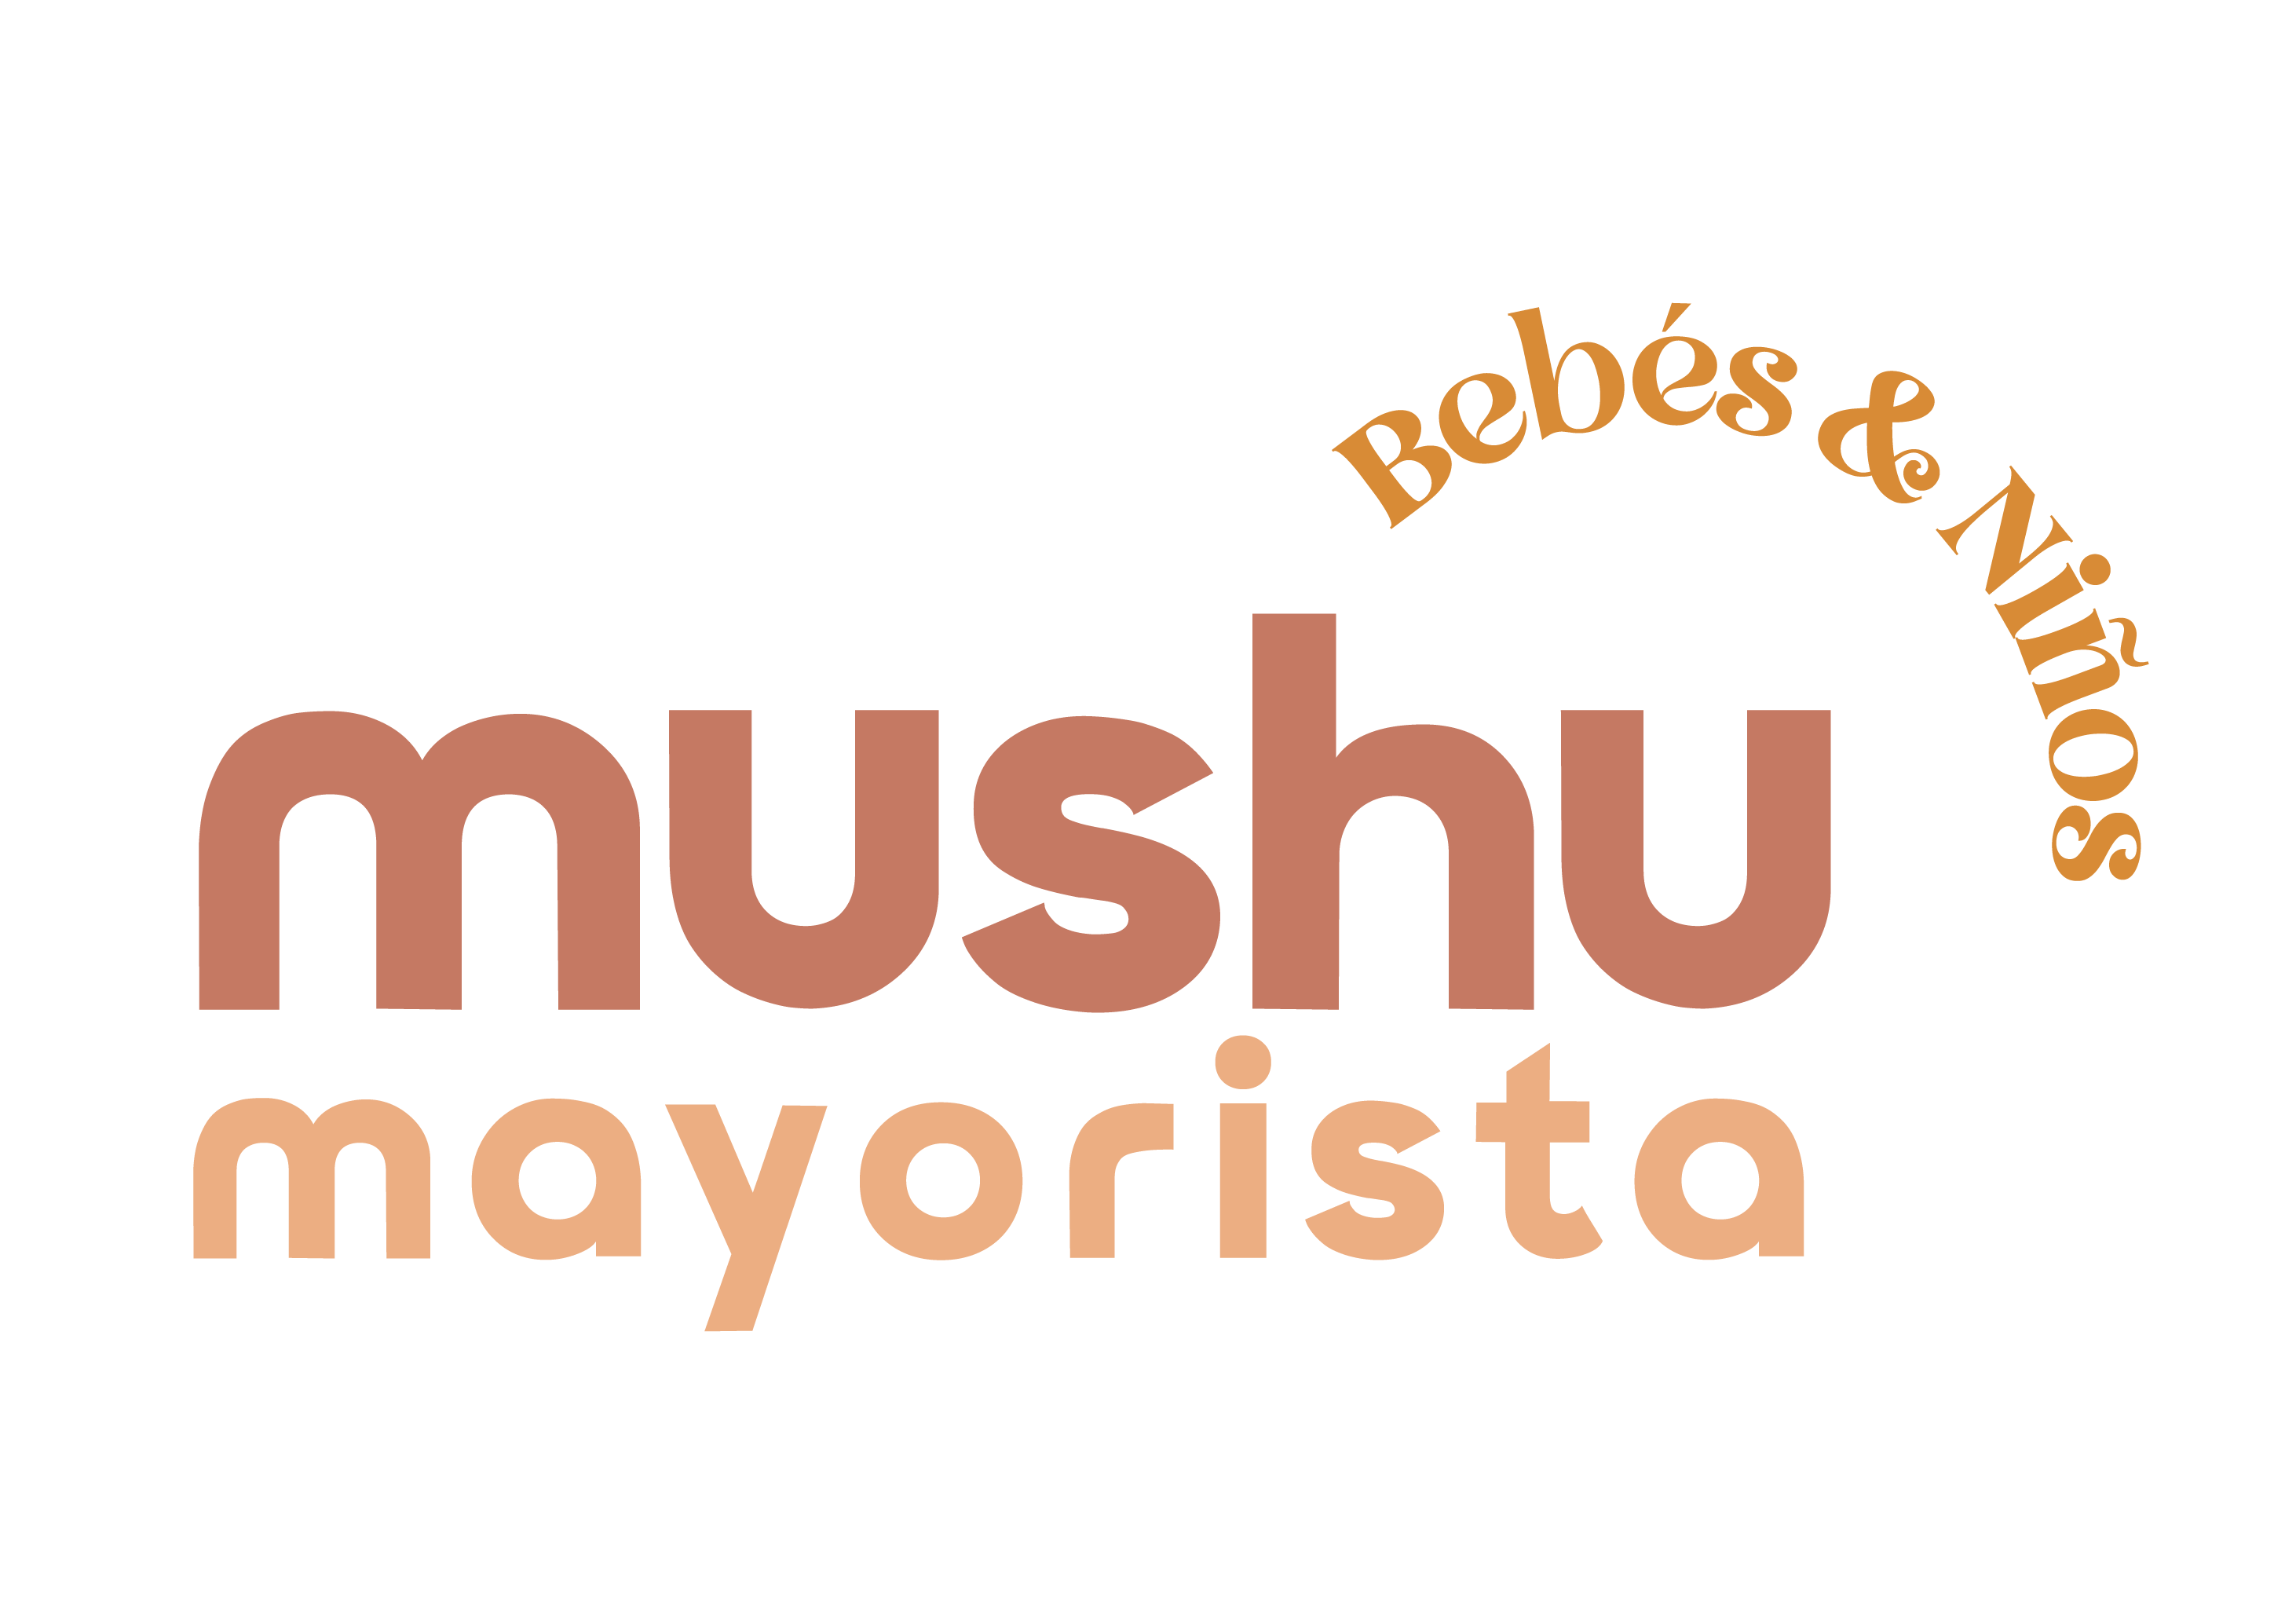 Mushu Mayorista bebes y niños 